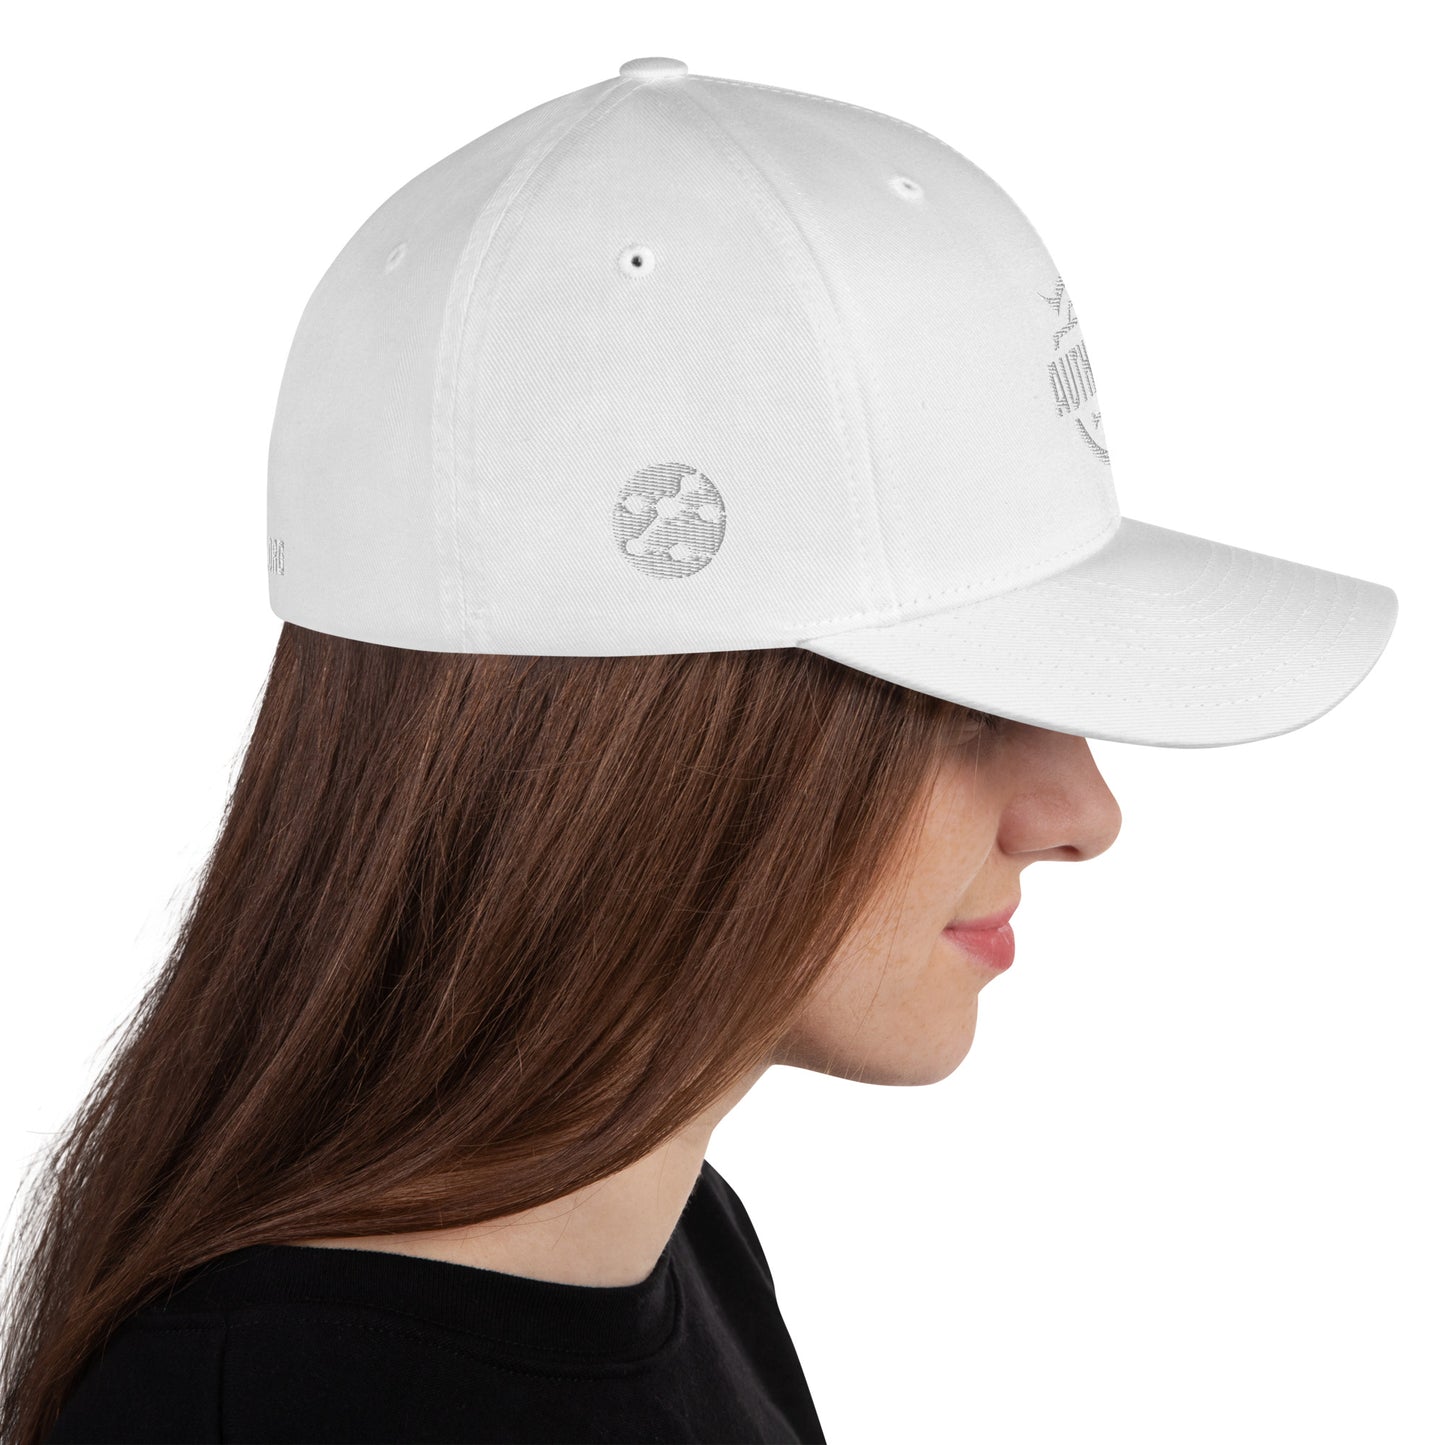 AuthenTEK Trend Whiteout FlexFit Hat